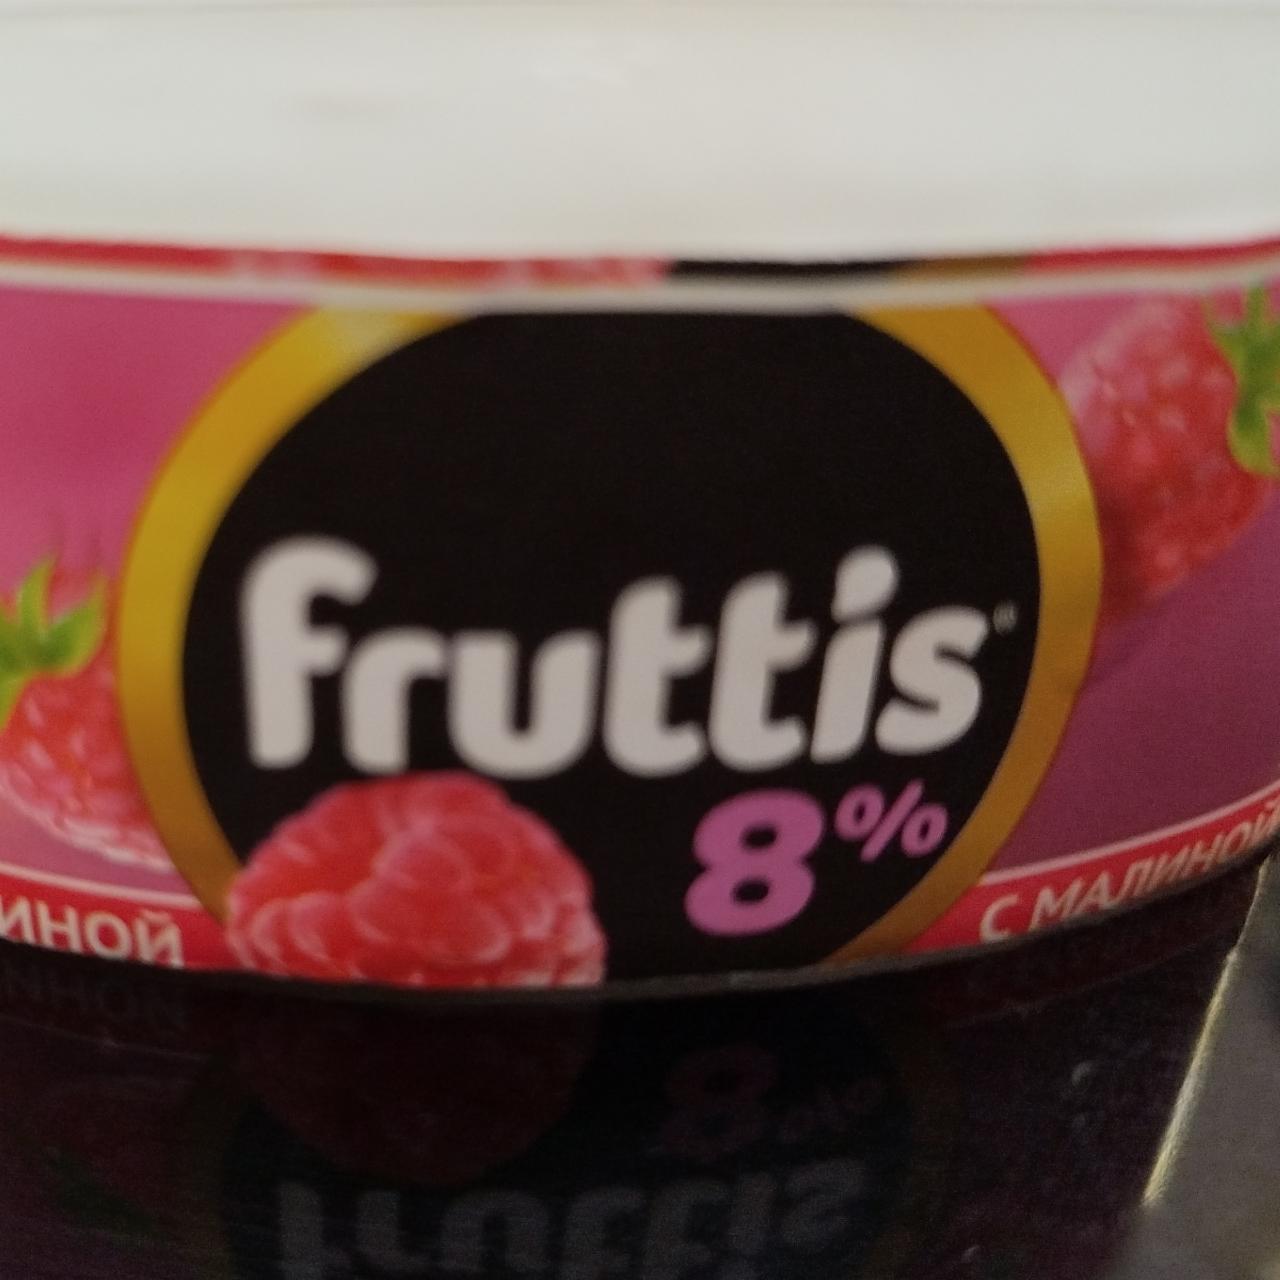 Фото - Йогурт 8% с малиной Fruttis